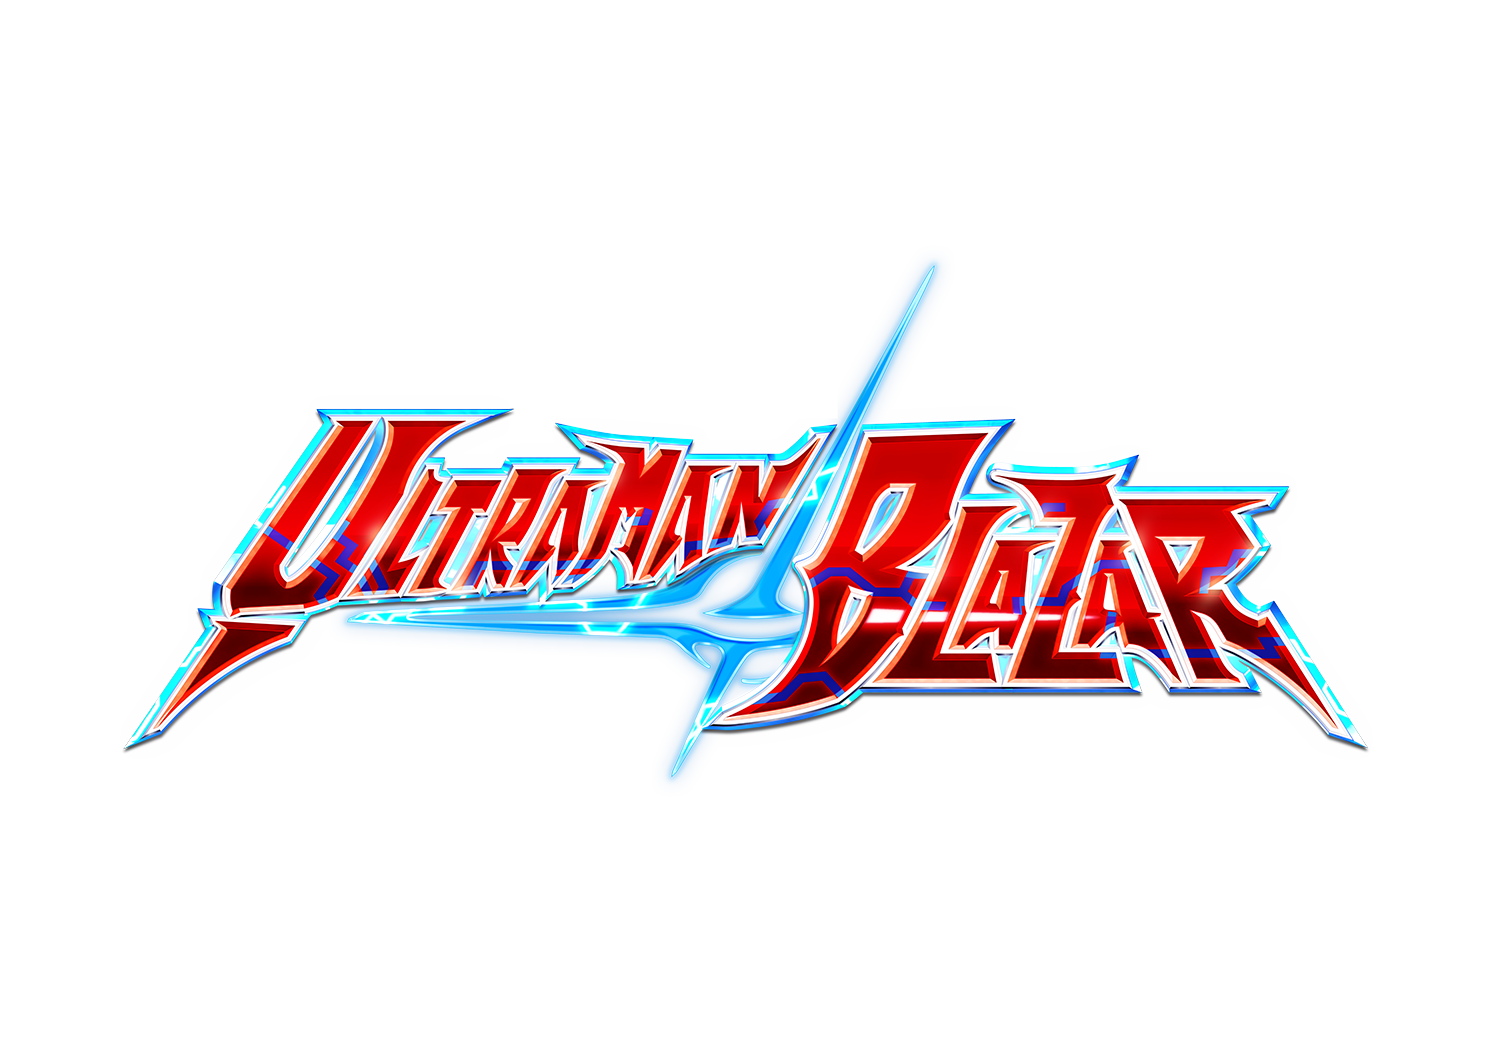 Ultraman Blazar